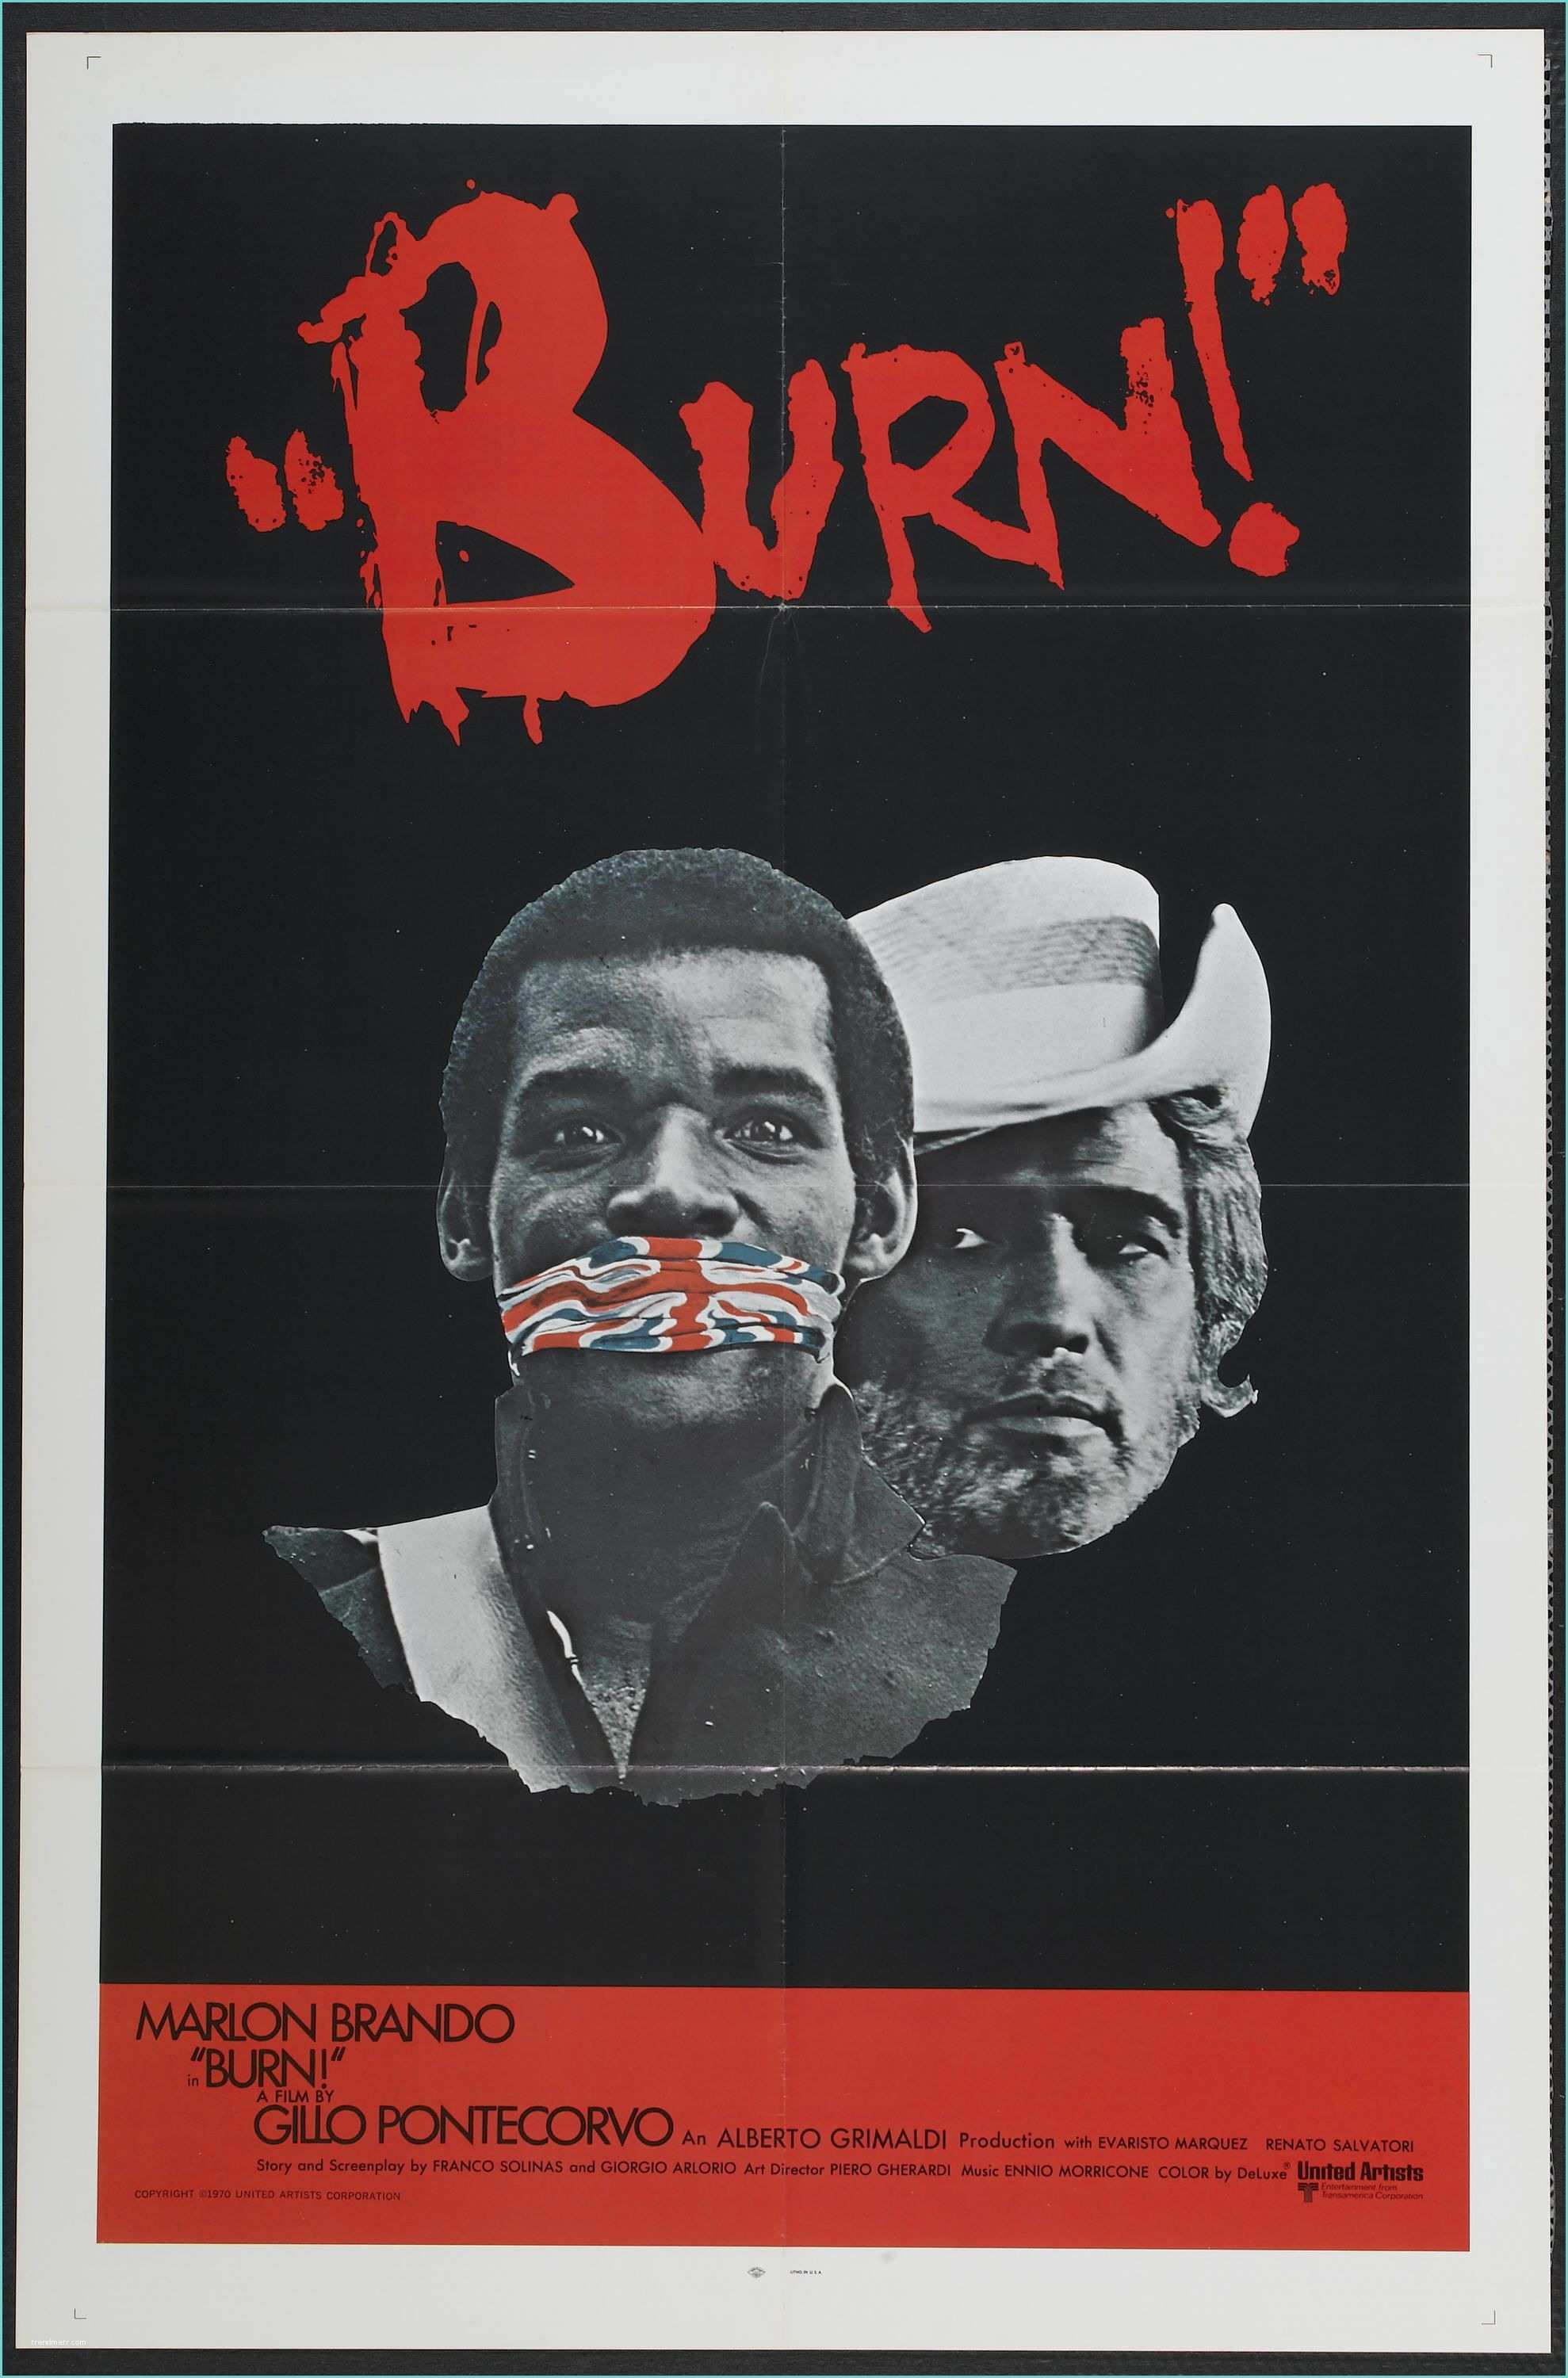 Allposters Return Policy Burn 1969 "queimada" original Title Stars Marlon Brando